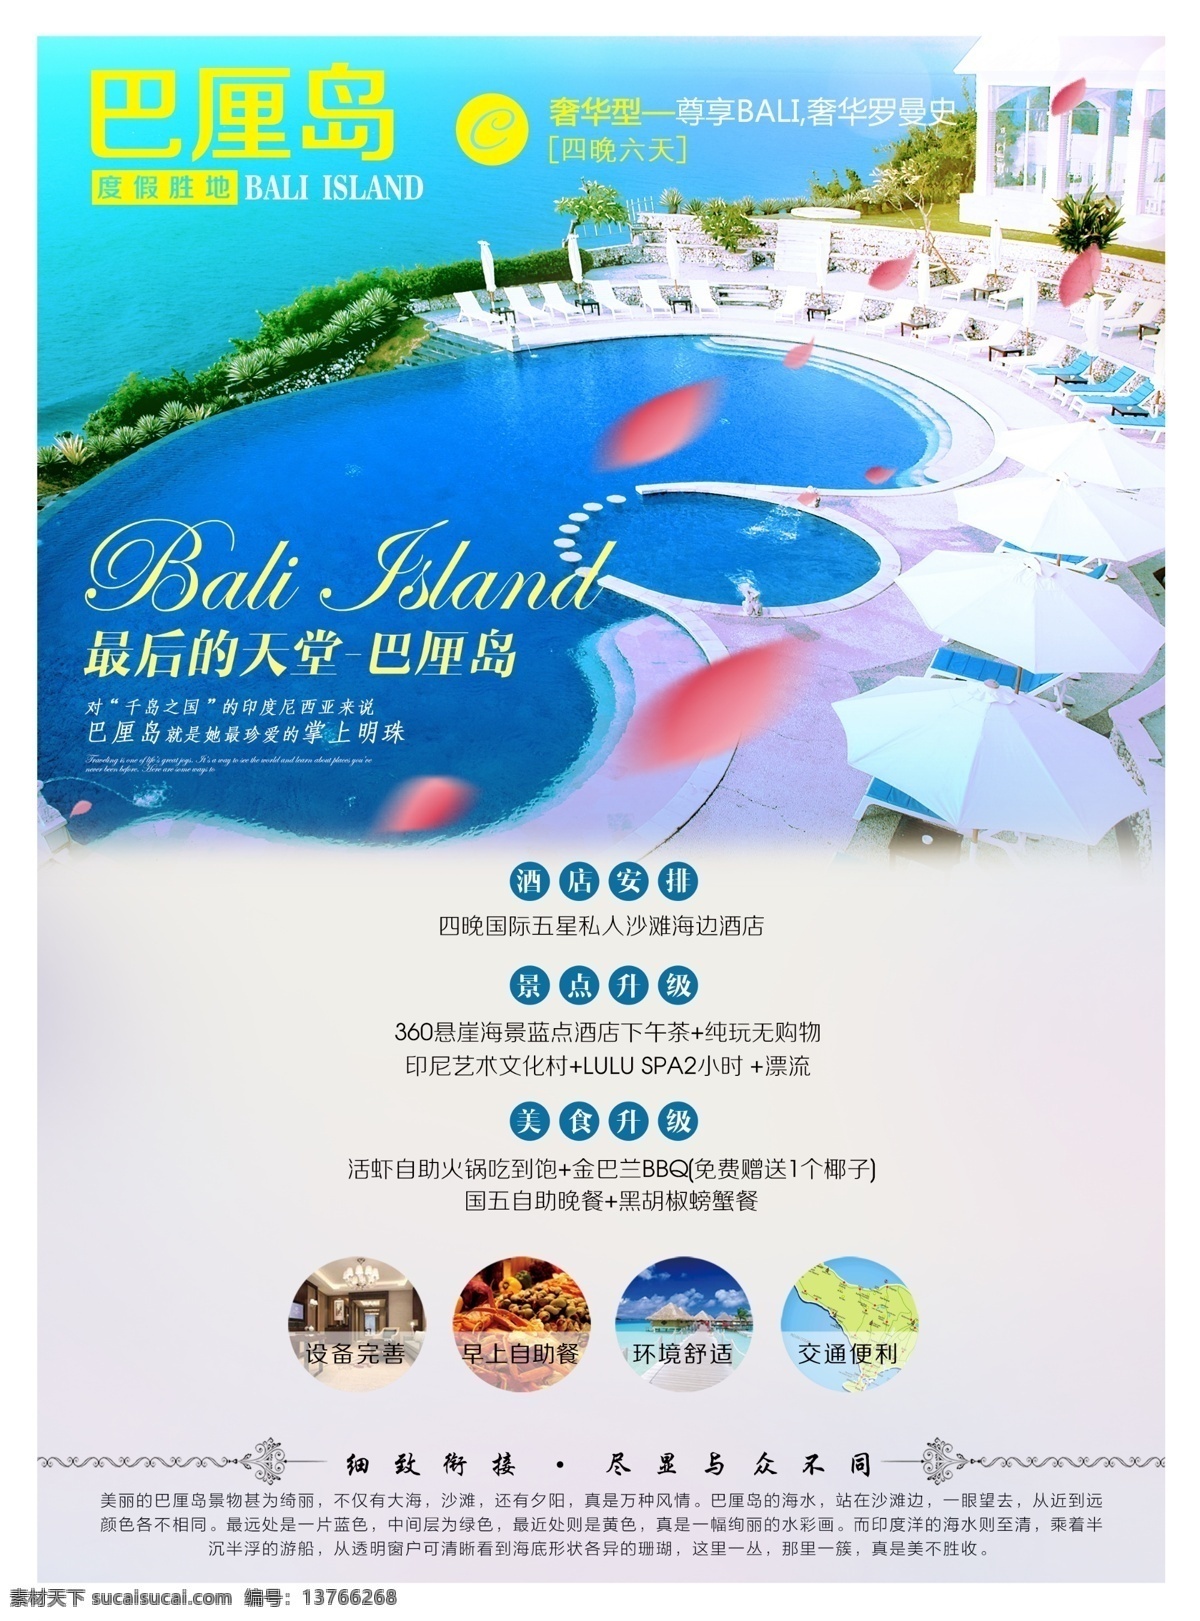 巴厘岛 旅游 海报 巴厘岛旅游 旅游海报 蓝点酒店 海景 ps文件